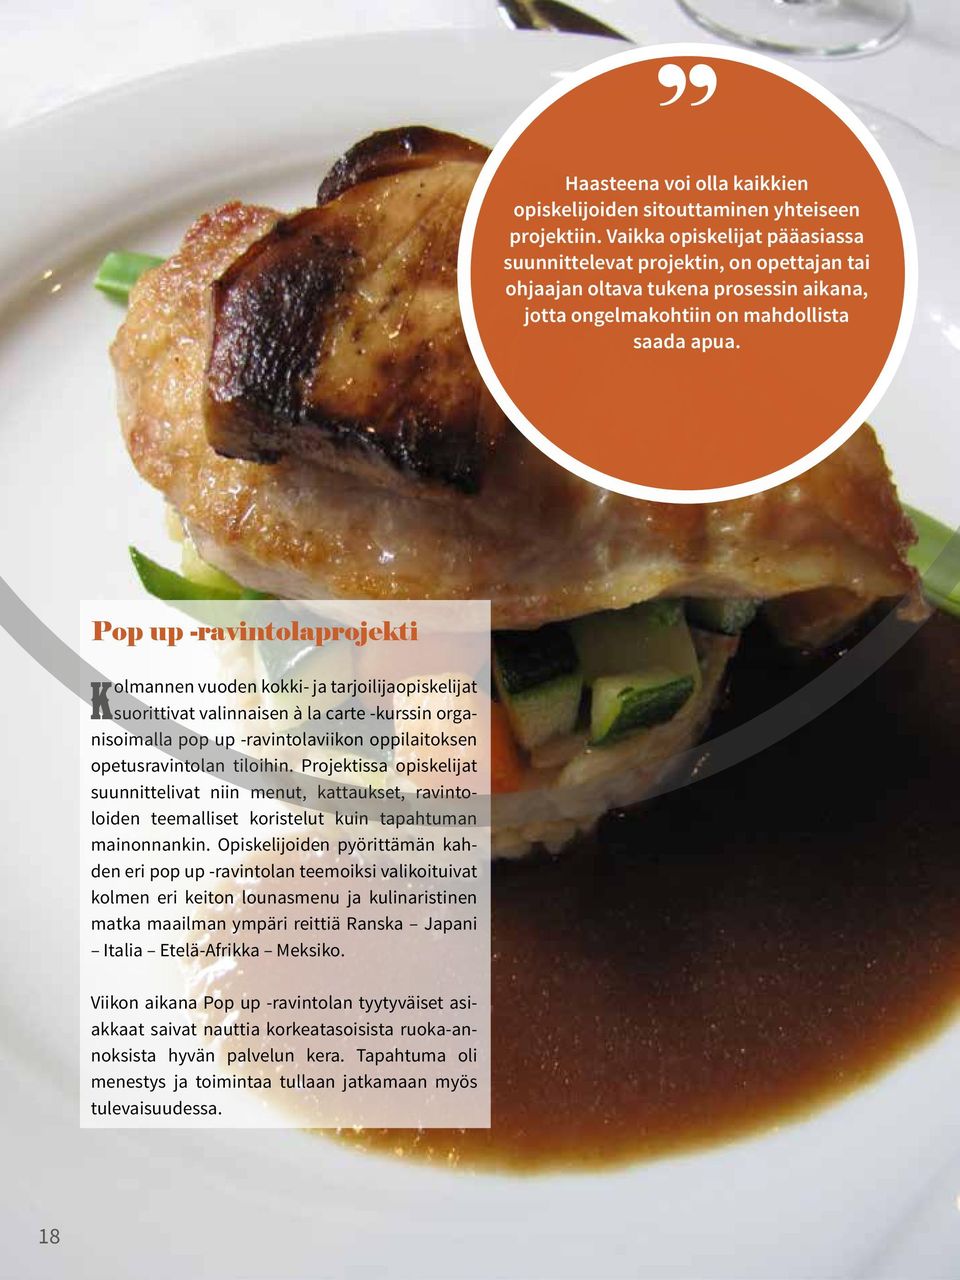 Pop up -ravintolaprojekti Kolmannen vuoden kokki- ja tarjoilijaopiskelijat suorittivat valinnaisen à la carte -kurssin organisoimalla pop up -ravintolaviikon oppilaitoksen opetusravintolan tiloihin.